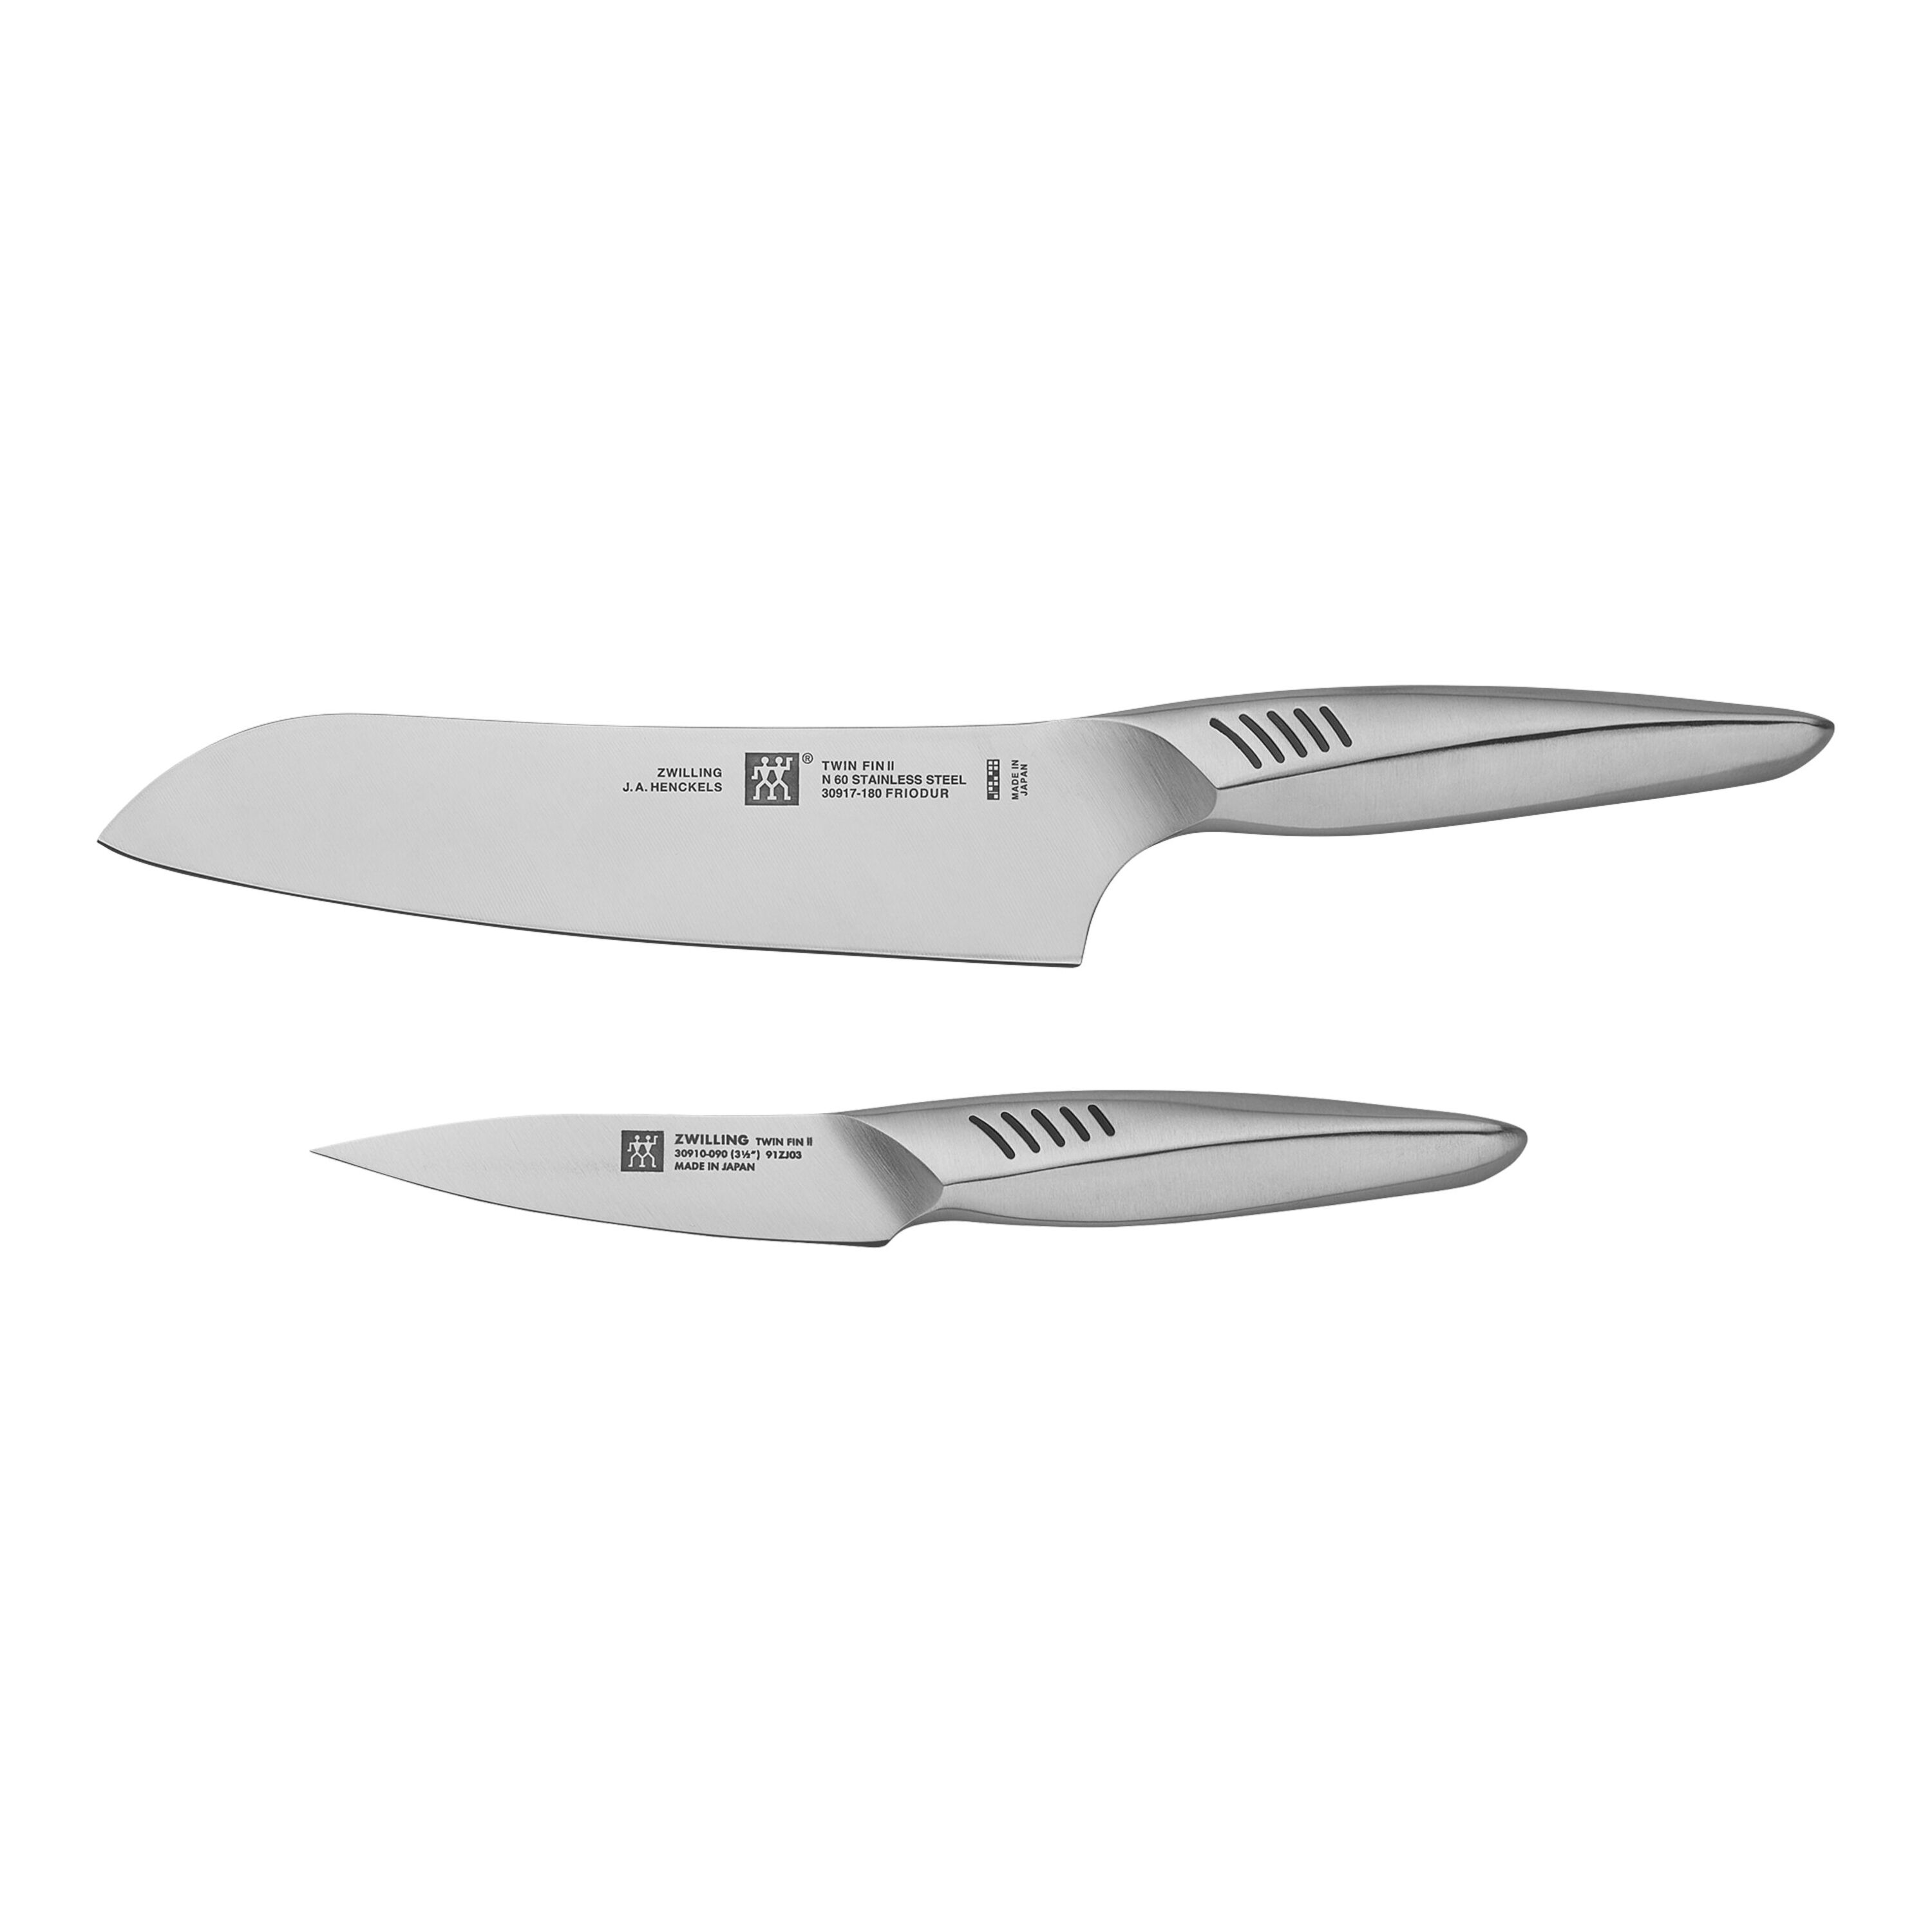 Zwilling Twin Fin II coltello chef da 20 cm - Gasparetto 1945